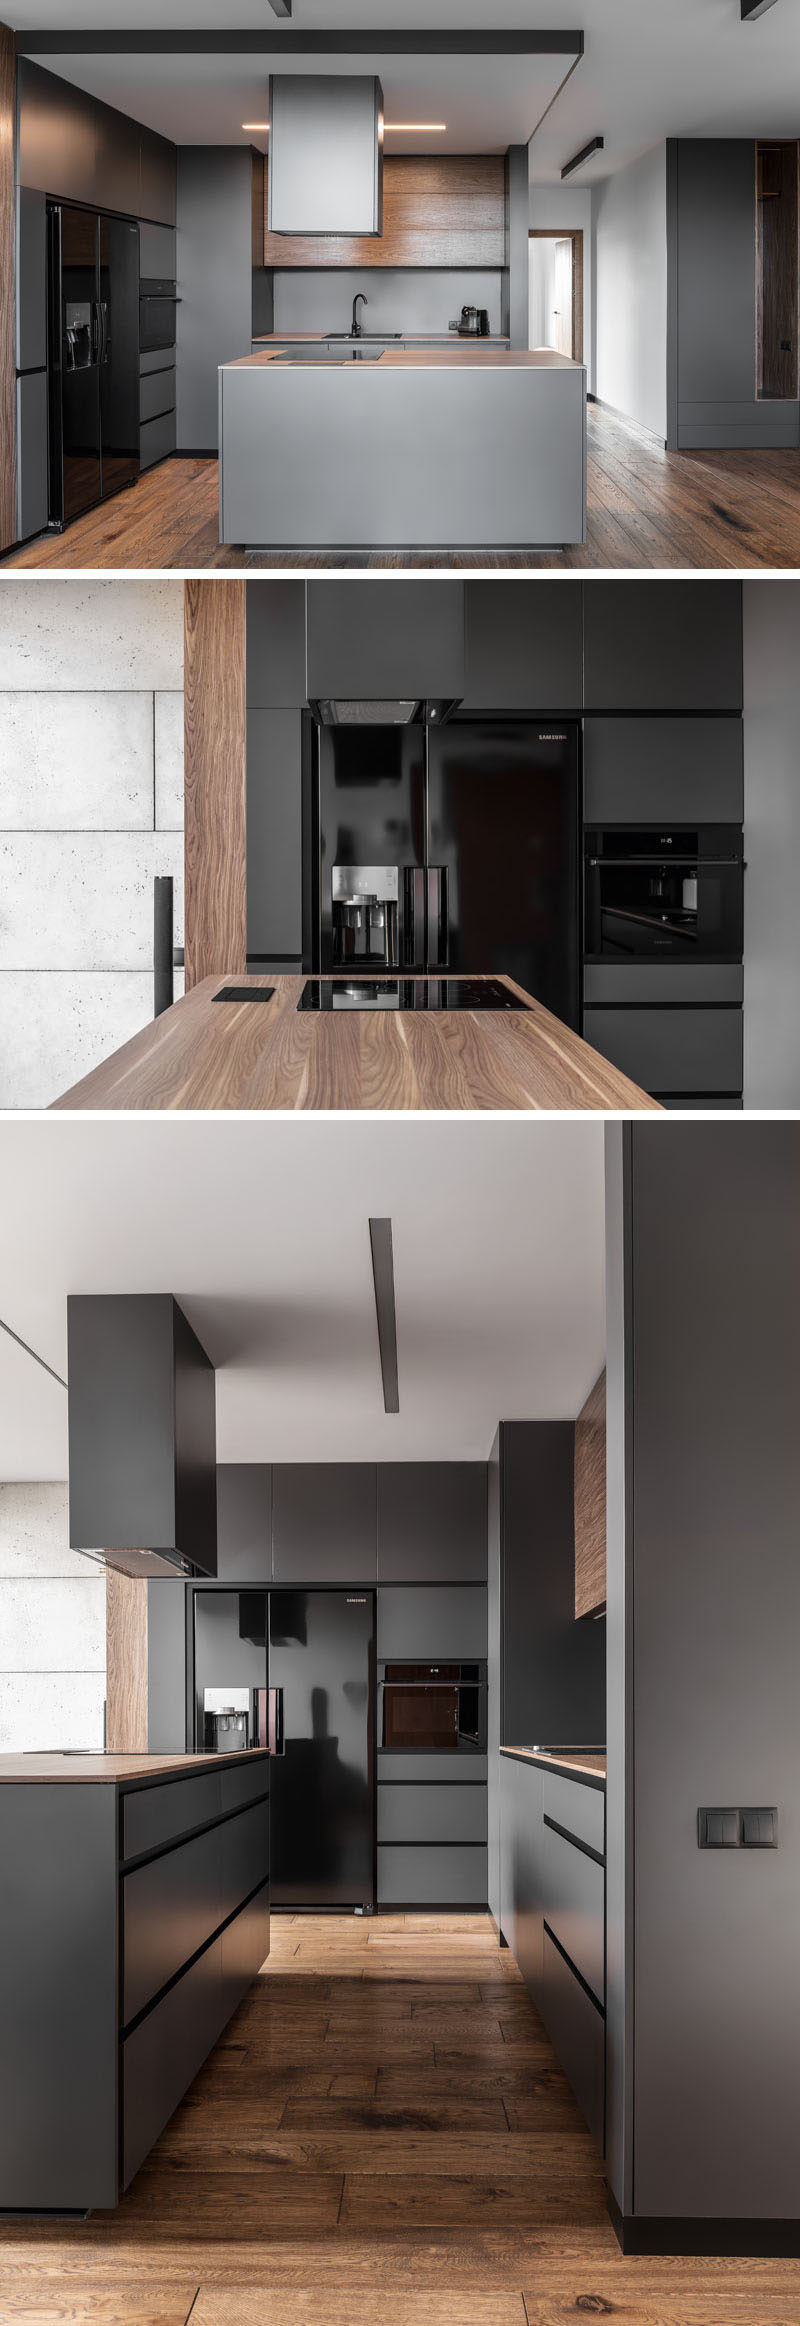 В этой современной кухне темно-серые стены и шкафы сочетаются с глянцевой черной техникой и деревянными элементами.